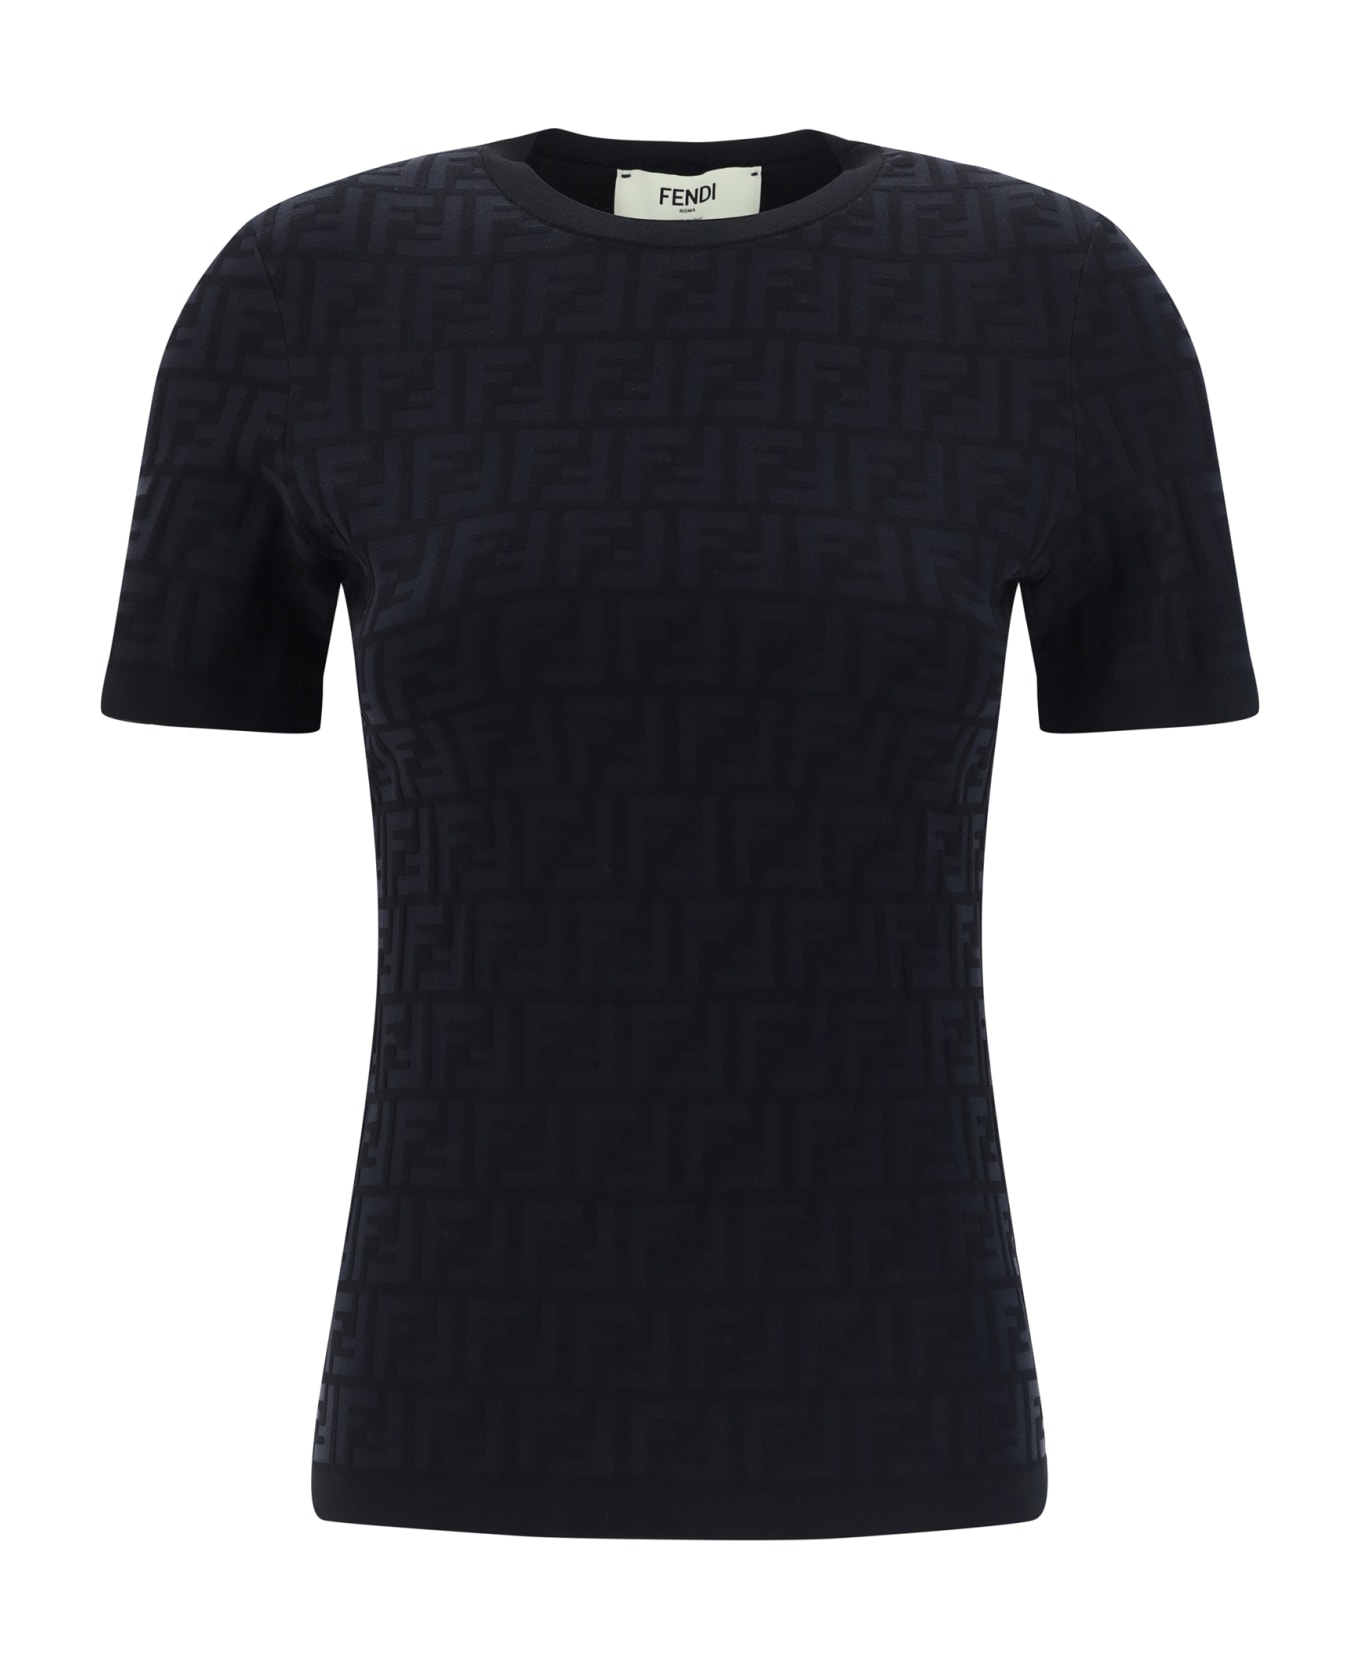 Fendi T-shirt - Gme Black Tシャツ